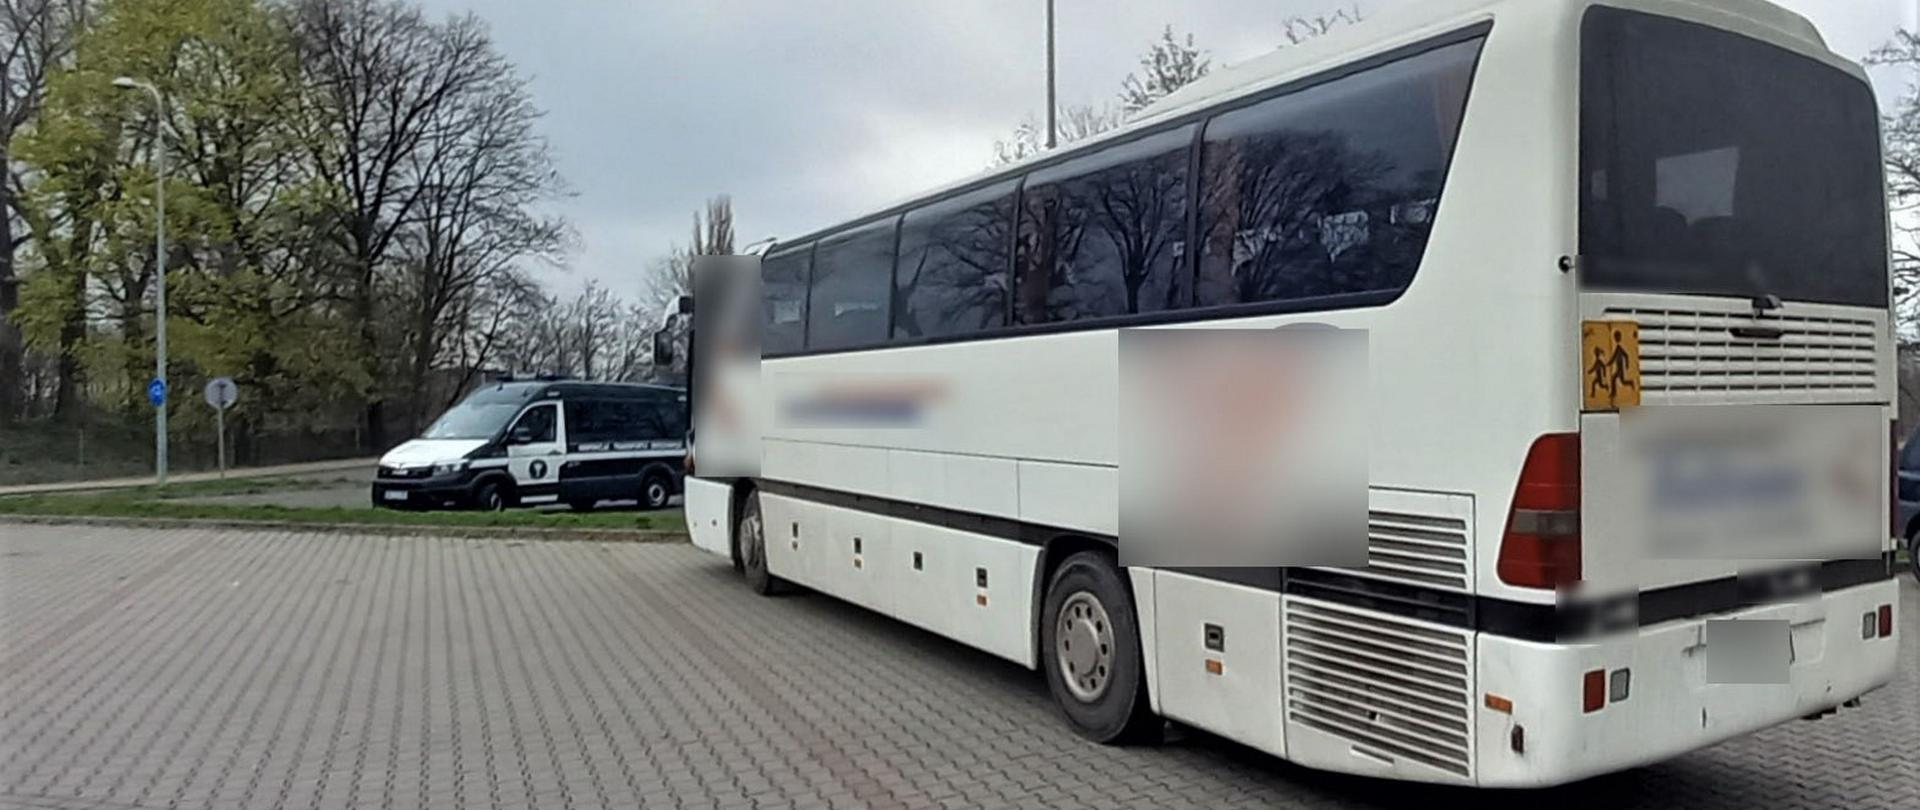 Inspektorzy transportu drogowego z oddziału w Ostrowie Wlkp. kontrolowali 19 kwietnia autokary przewożące dzieci pod Aquaparkiem w Kaliszu